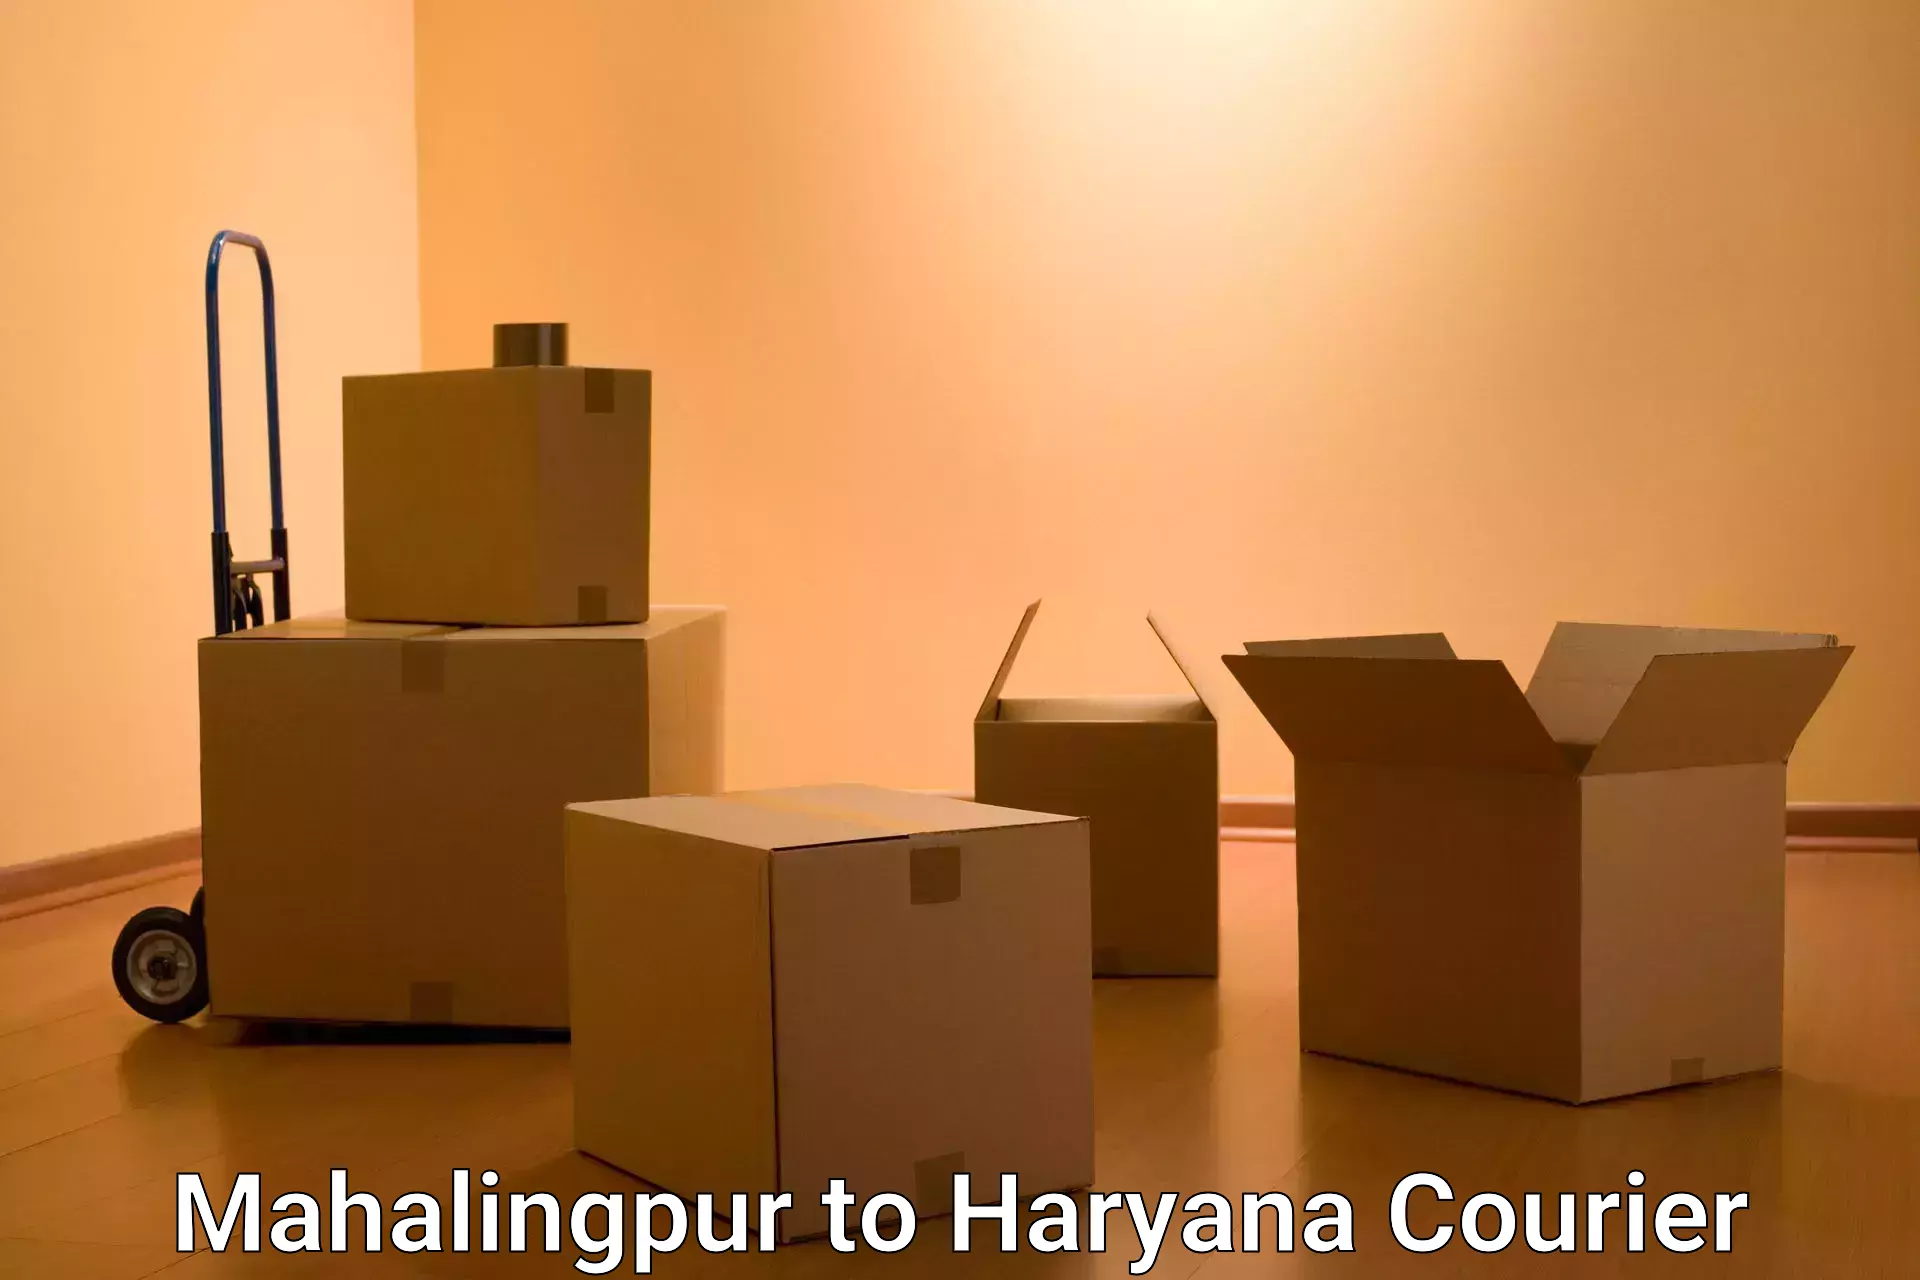 Digital shipping tools Mahalingpur to Haryana